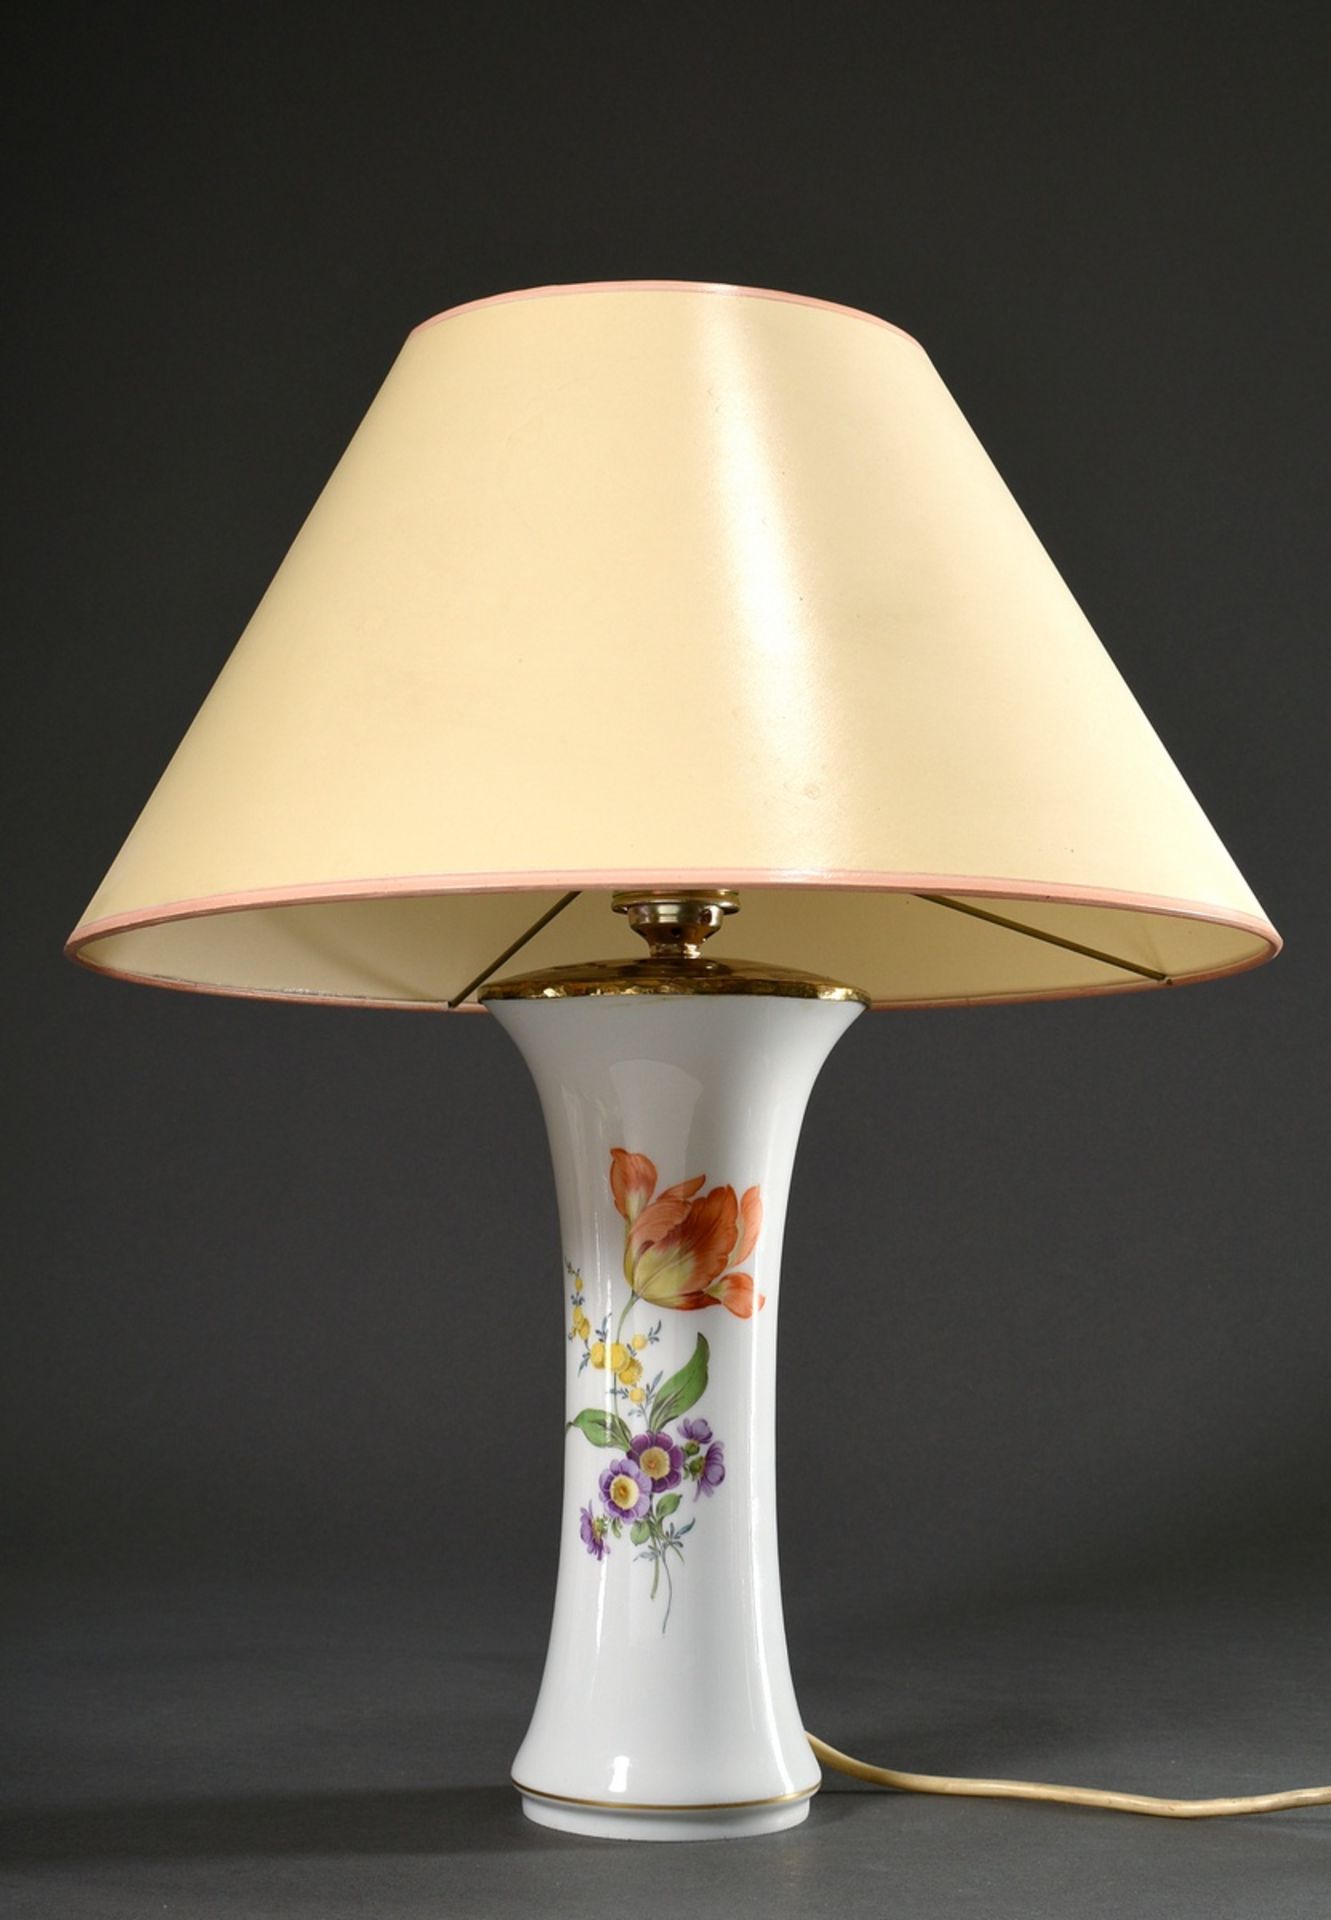 Meissen Lampe mit polychromer Malerei „Deutsche Blume“, Modellnr.: 480, Formernr.: 28, Malernr.: 46